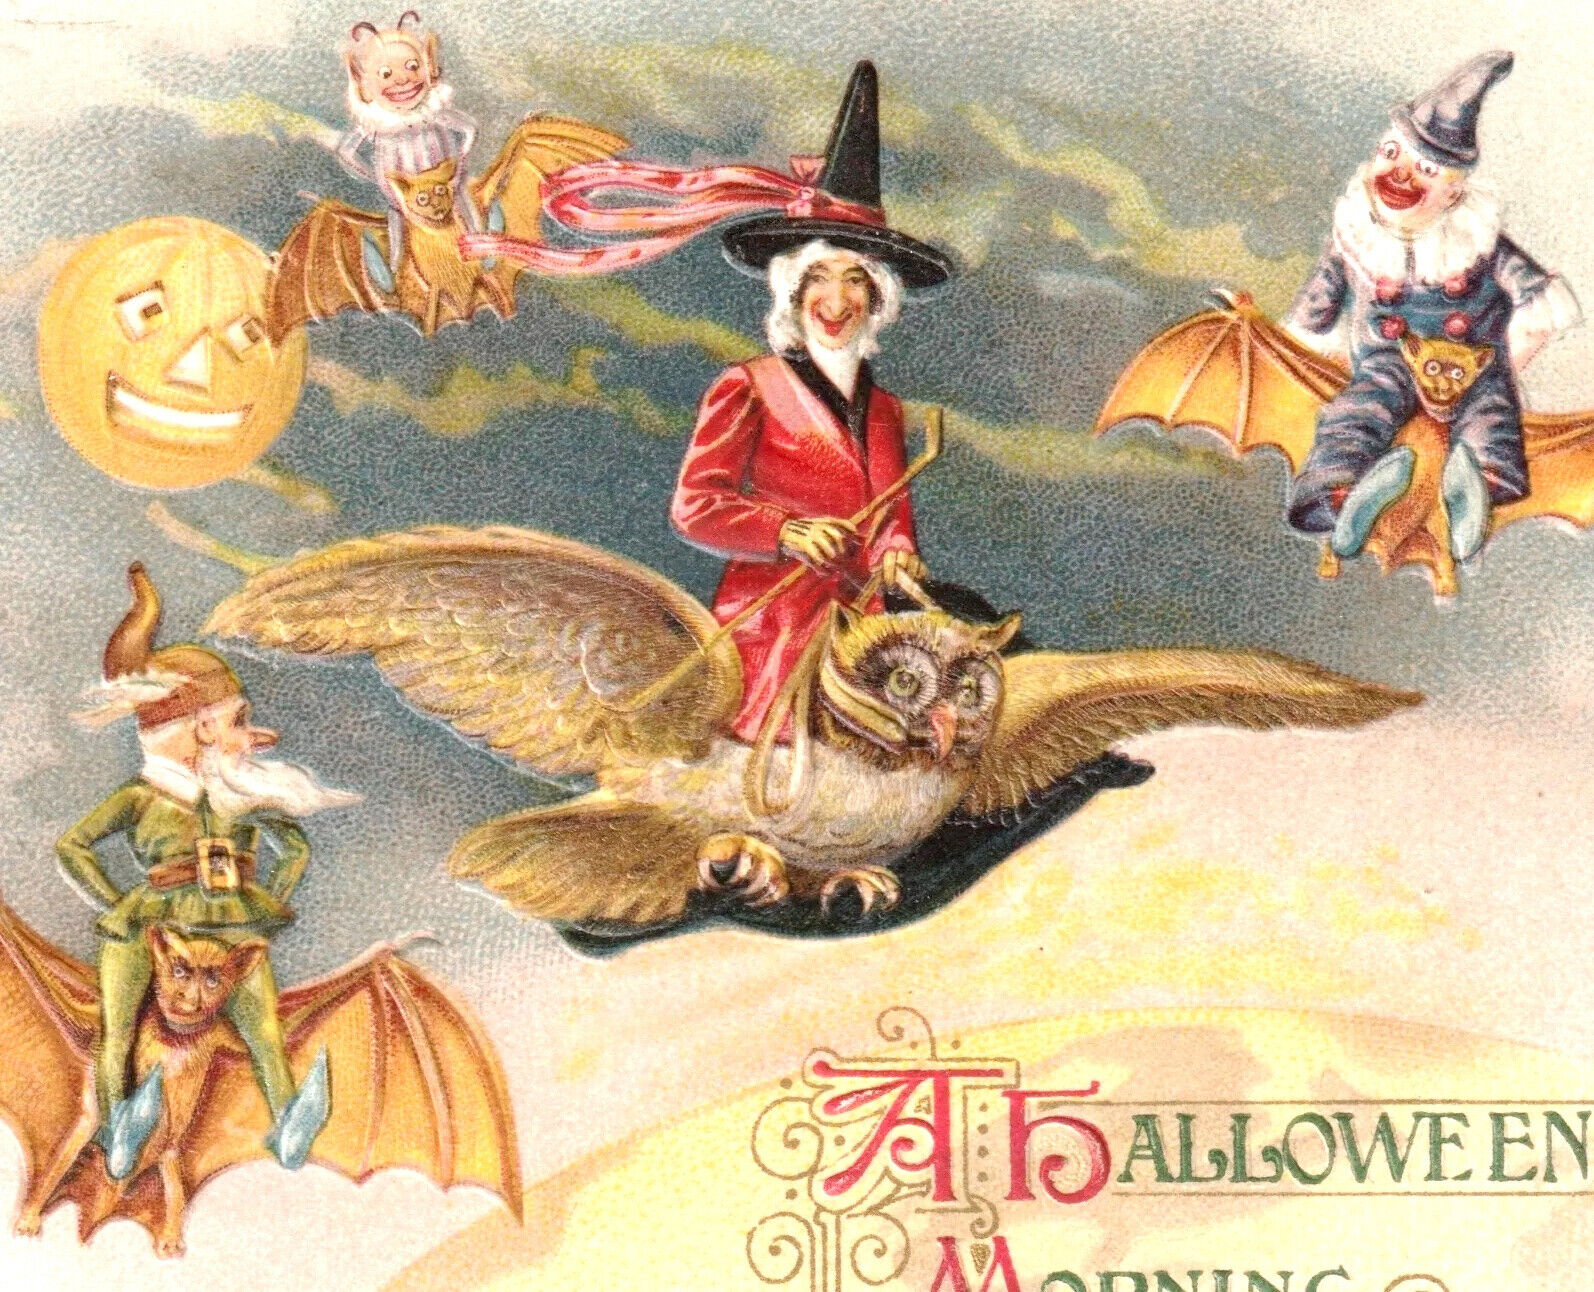 Winsch 1914 Schmucker A Halloween Morning Witch Clown Elf Owl Antique PostCard